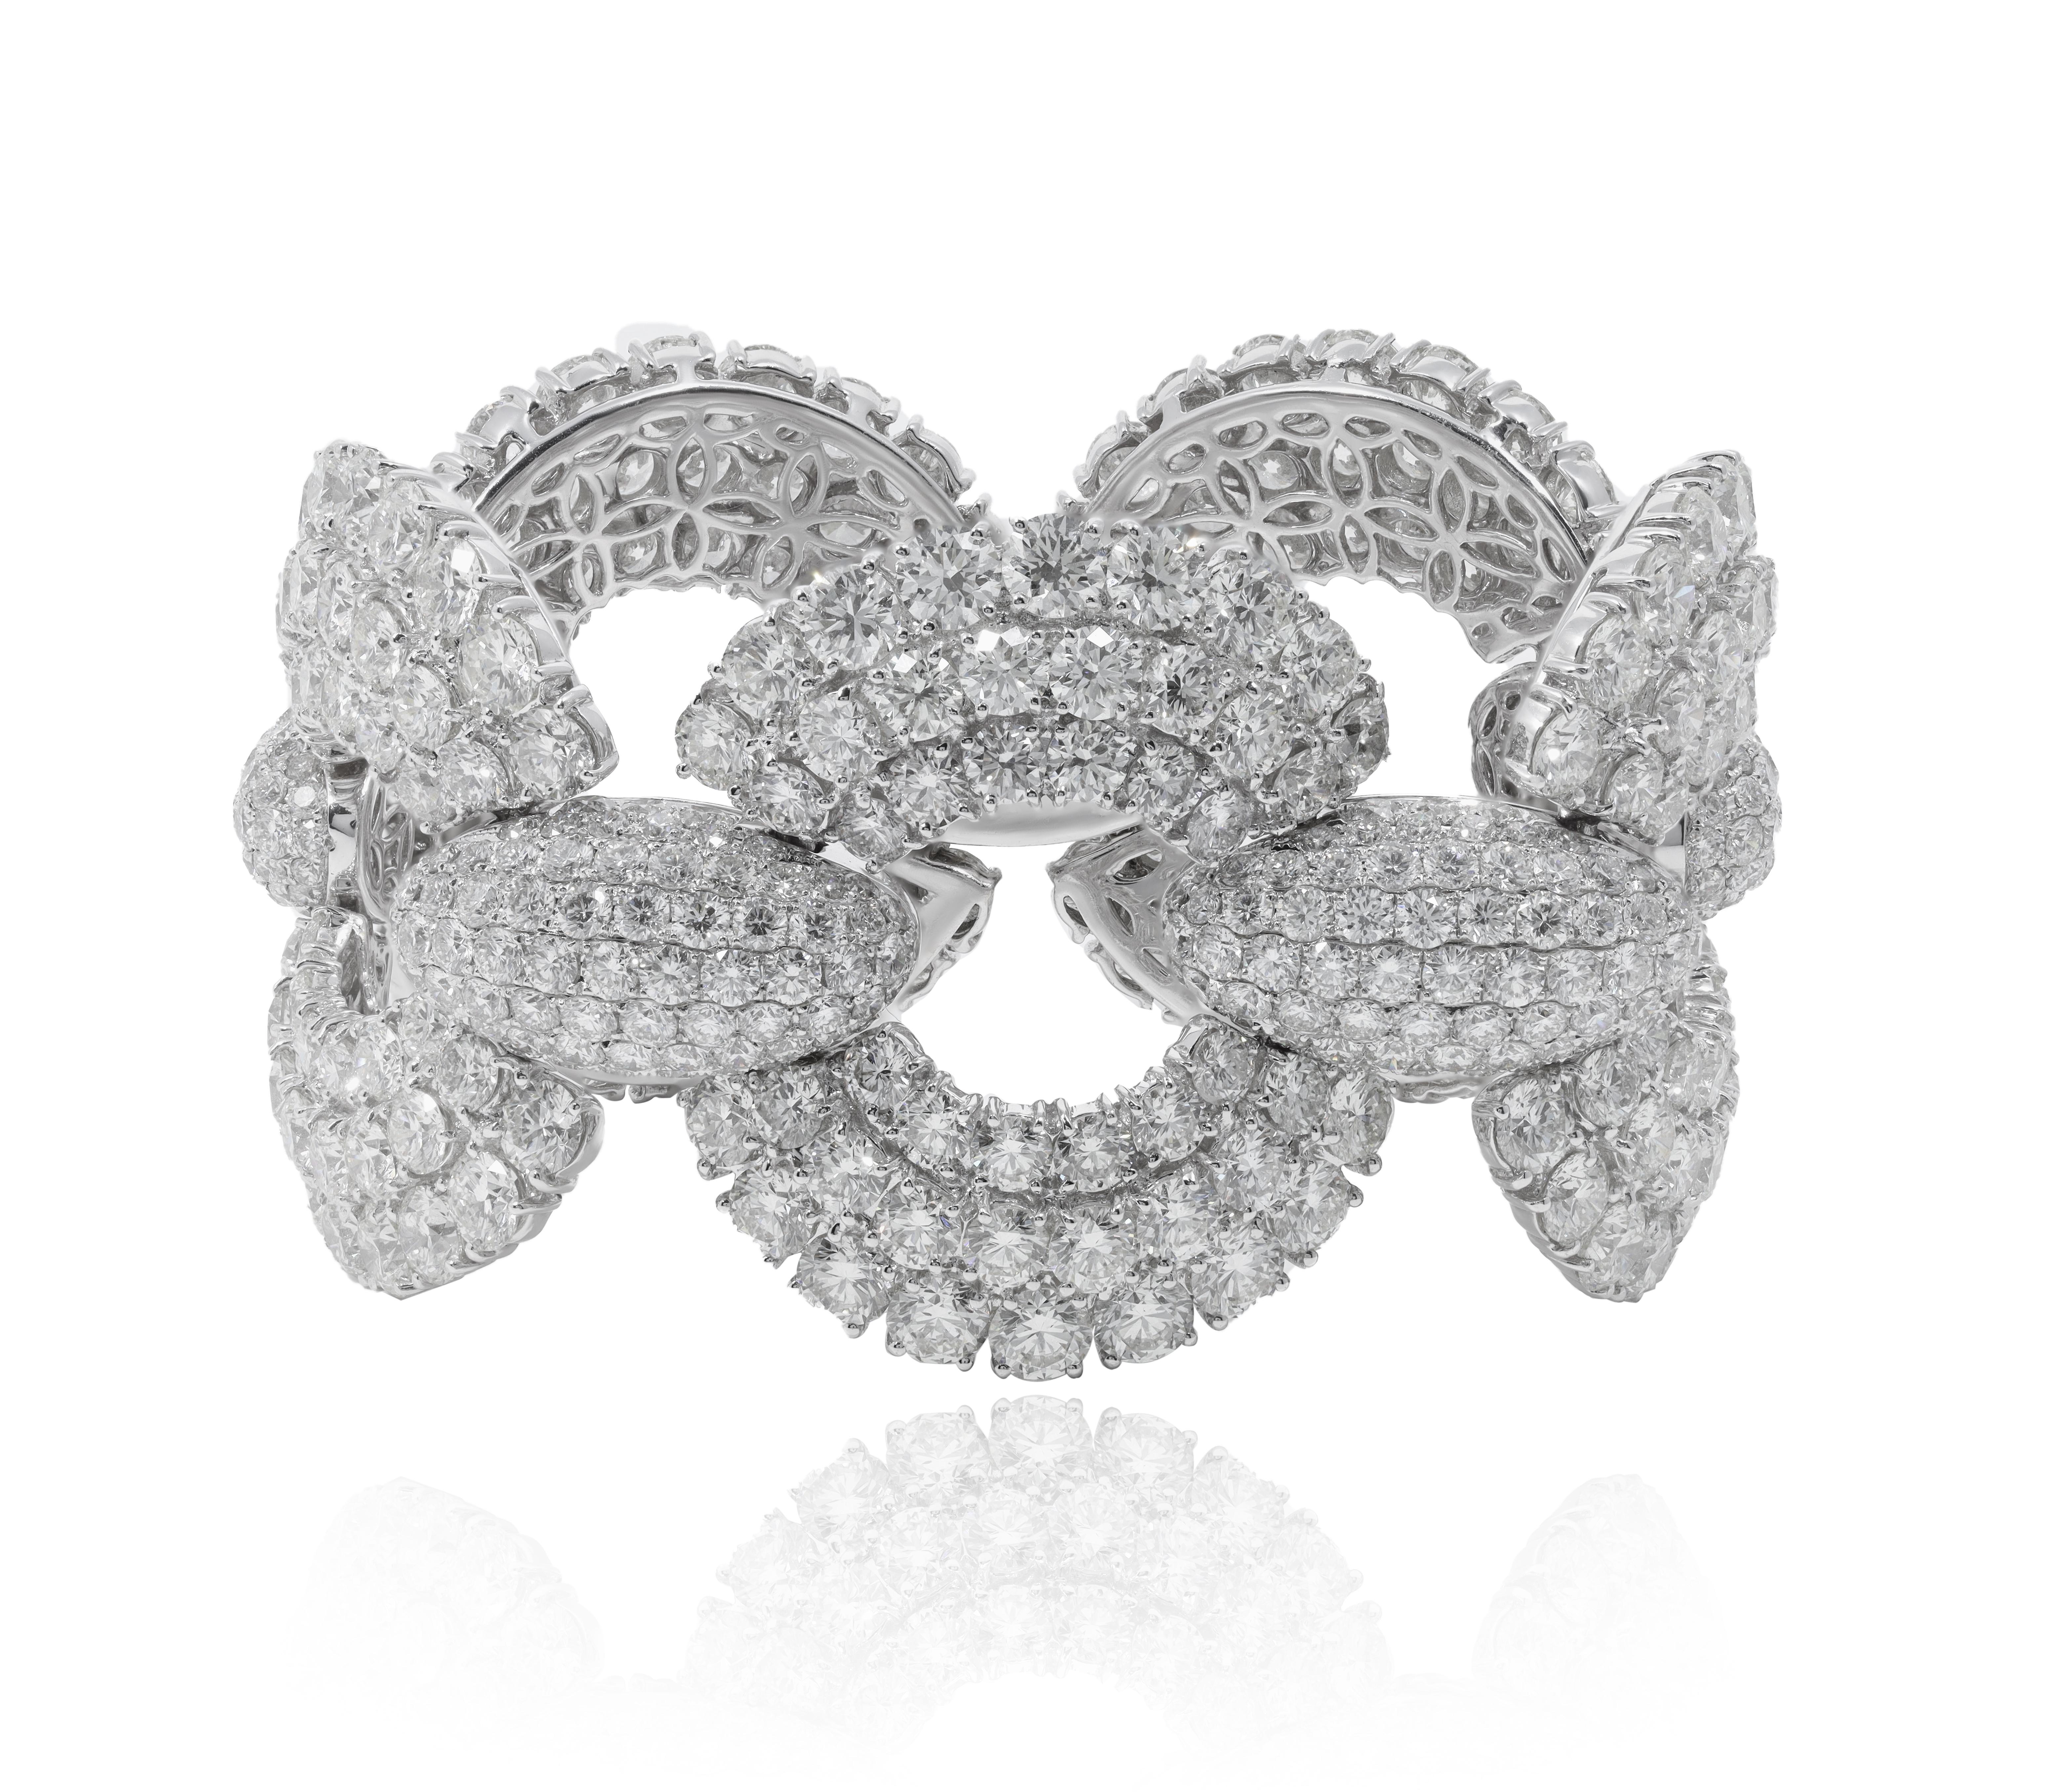 18 kt Weißgold Kreis pave Diamant Mode Armband mit 80,01 cts von runden Diamanten 
Diana M. ist seit über 35 Jahren ein führender Anbieter von hochwertigem Schmuck.
Diana M ist eine zentrale Anlaufstelle für alle Ihre Schmuckeinkäufe und führt eine